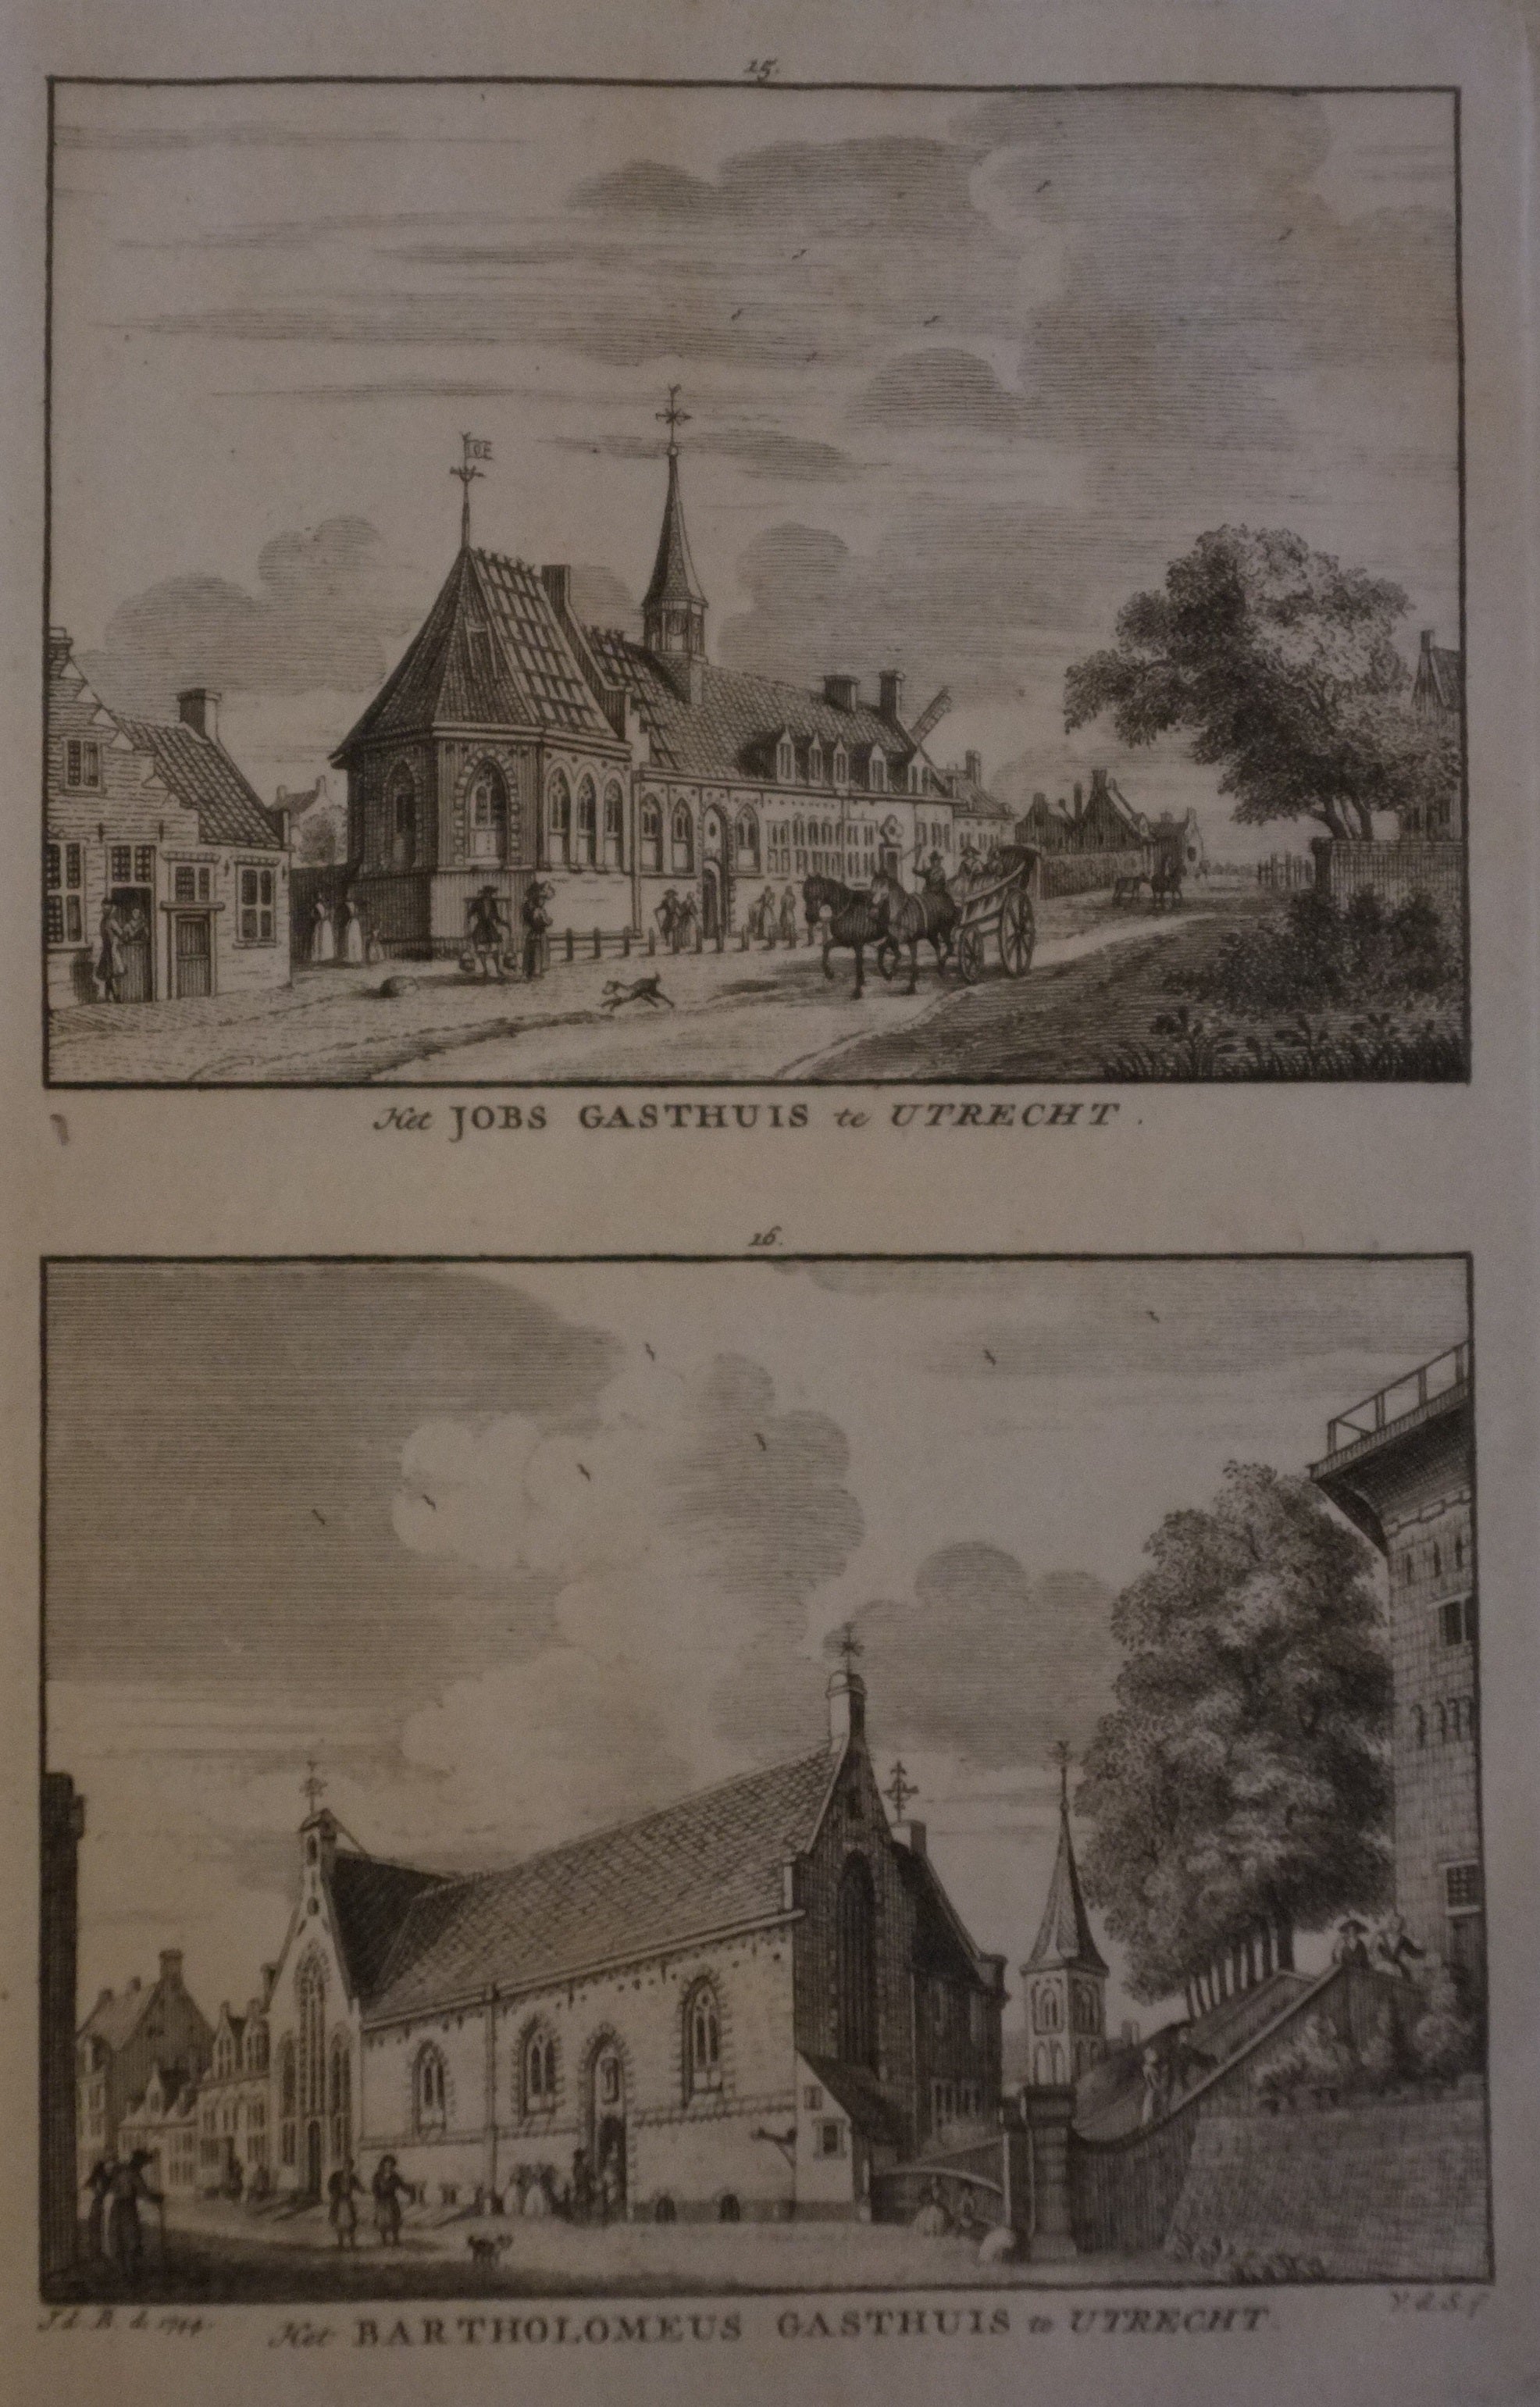 St. Jobsgasthuis / Barthomeus Gasthuis - ca. 1750